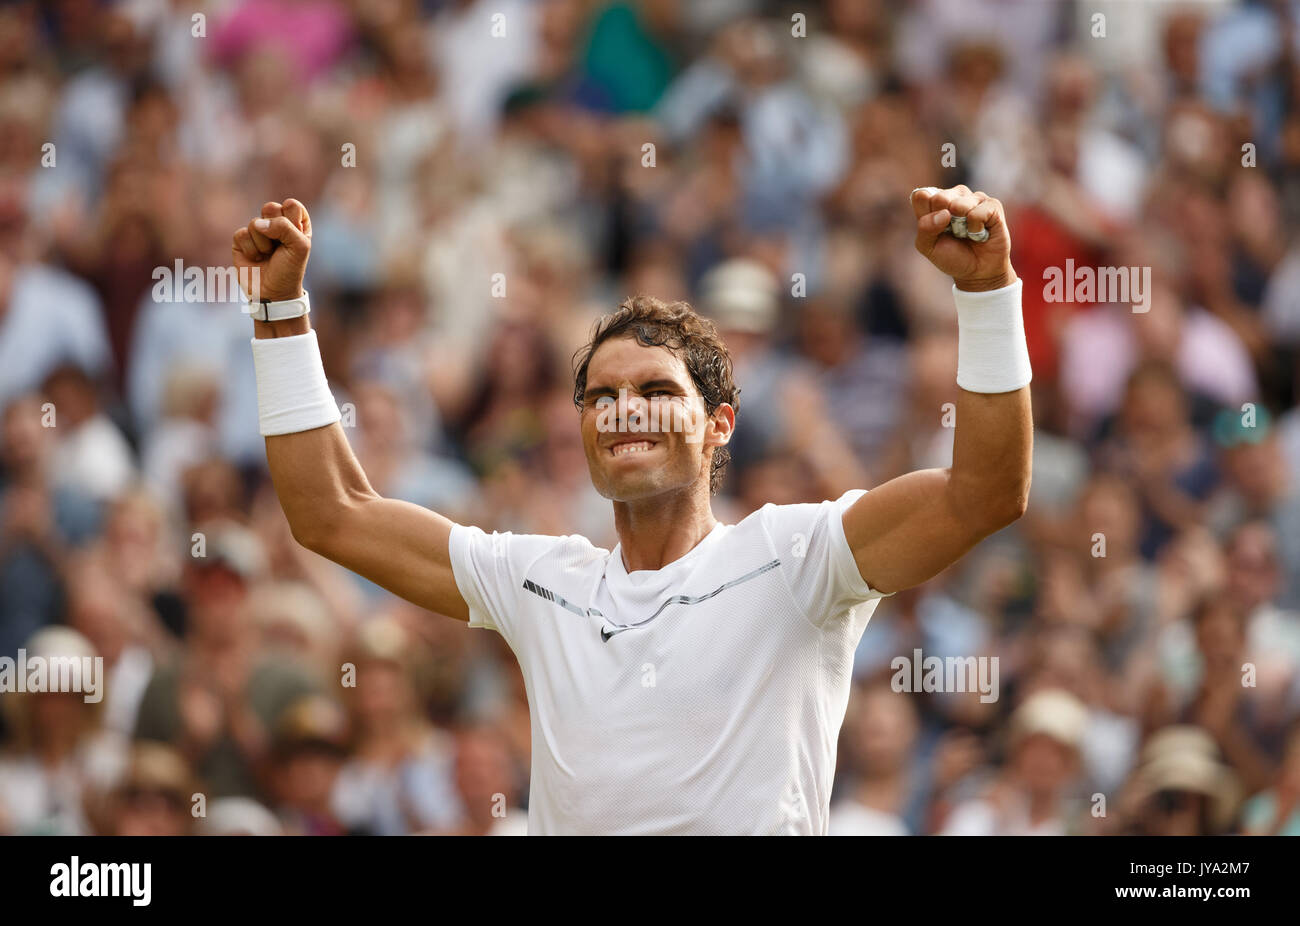 Rafael Nadal streckt seine Arme auf und jubelt nach seinem Sieg in Wimbledon Tennis Championships 2017, London, England, Vereinigtes Königreich. Stockfoto